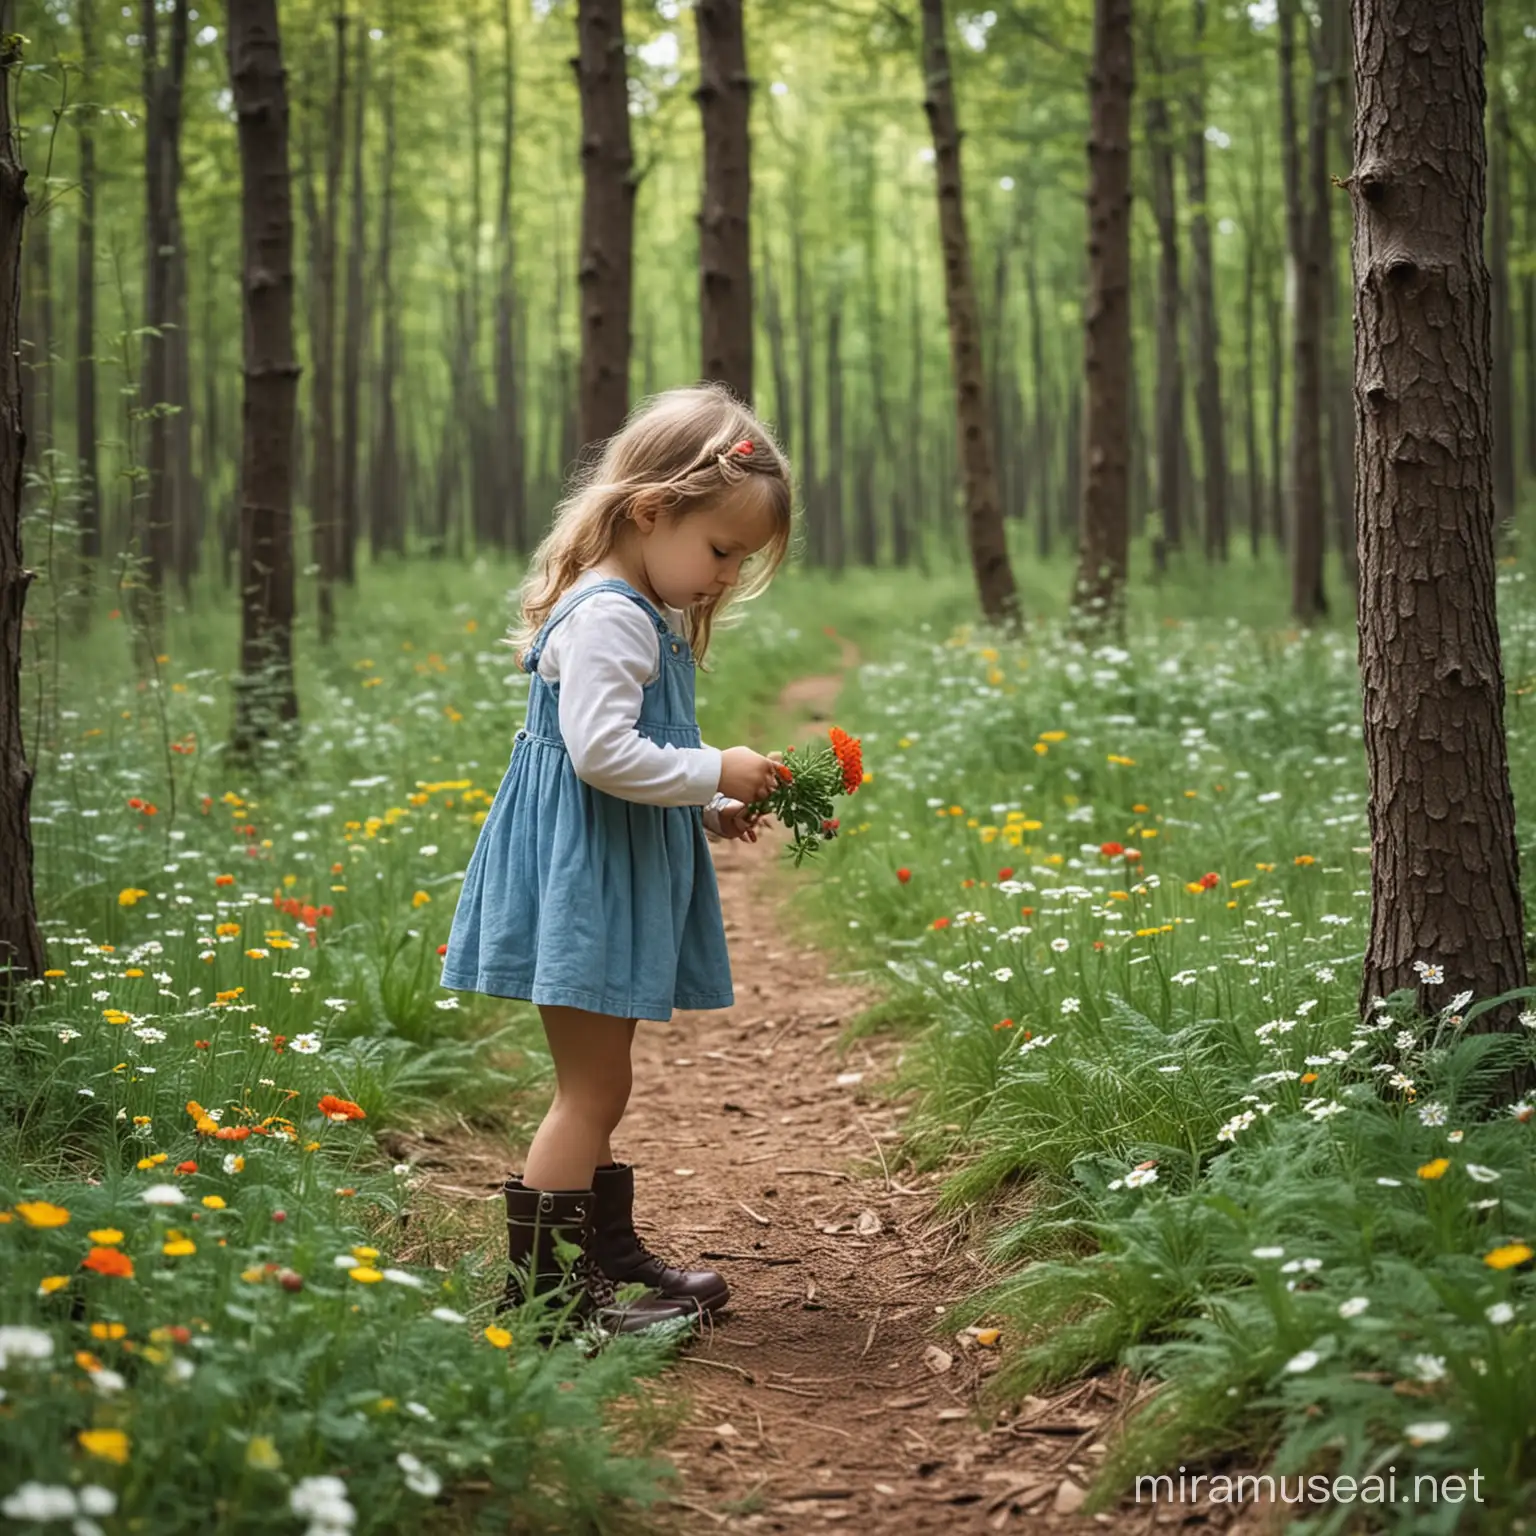 Lav et billede af en lille pige i en skov, pigen samler blomster